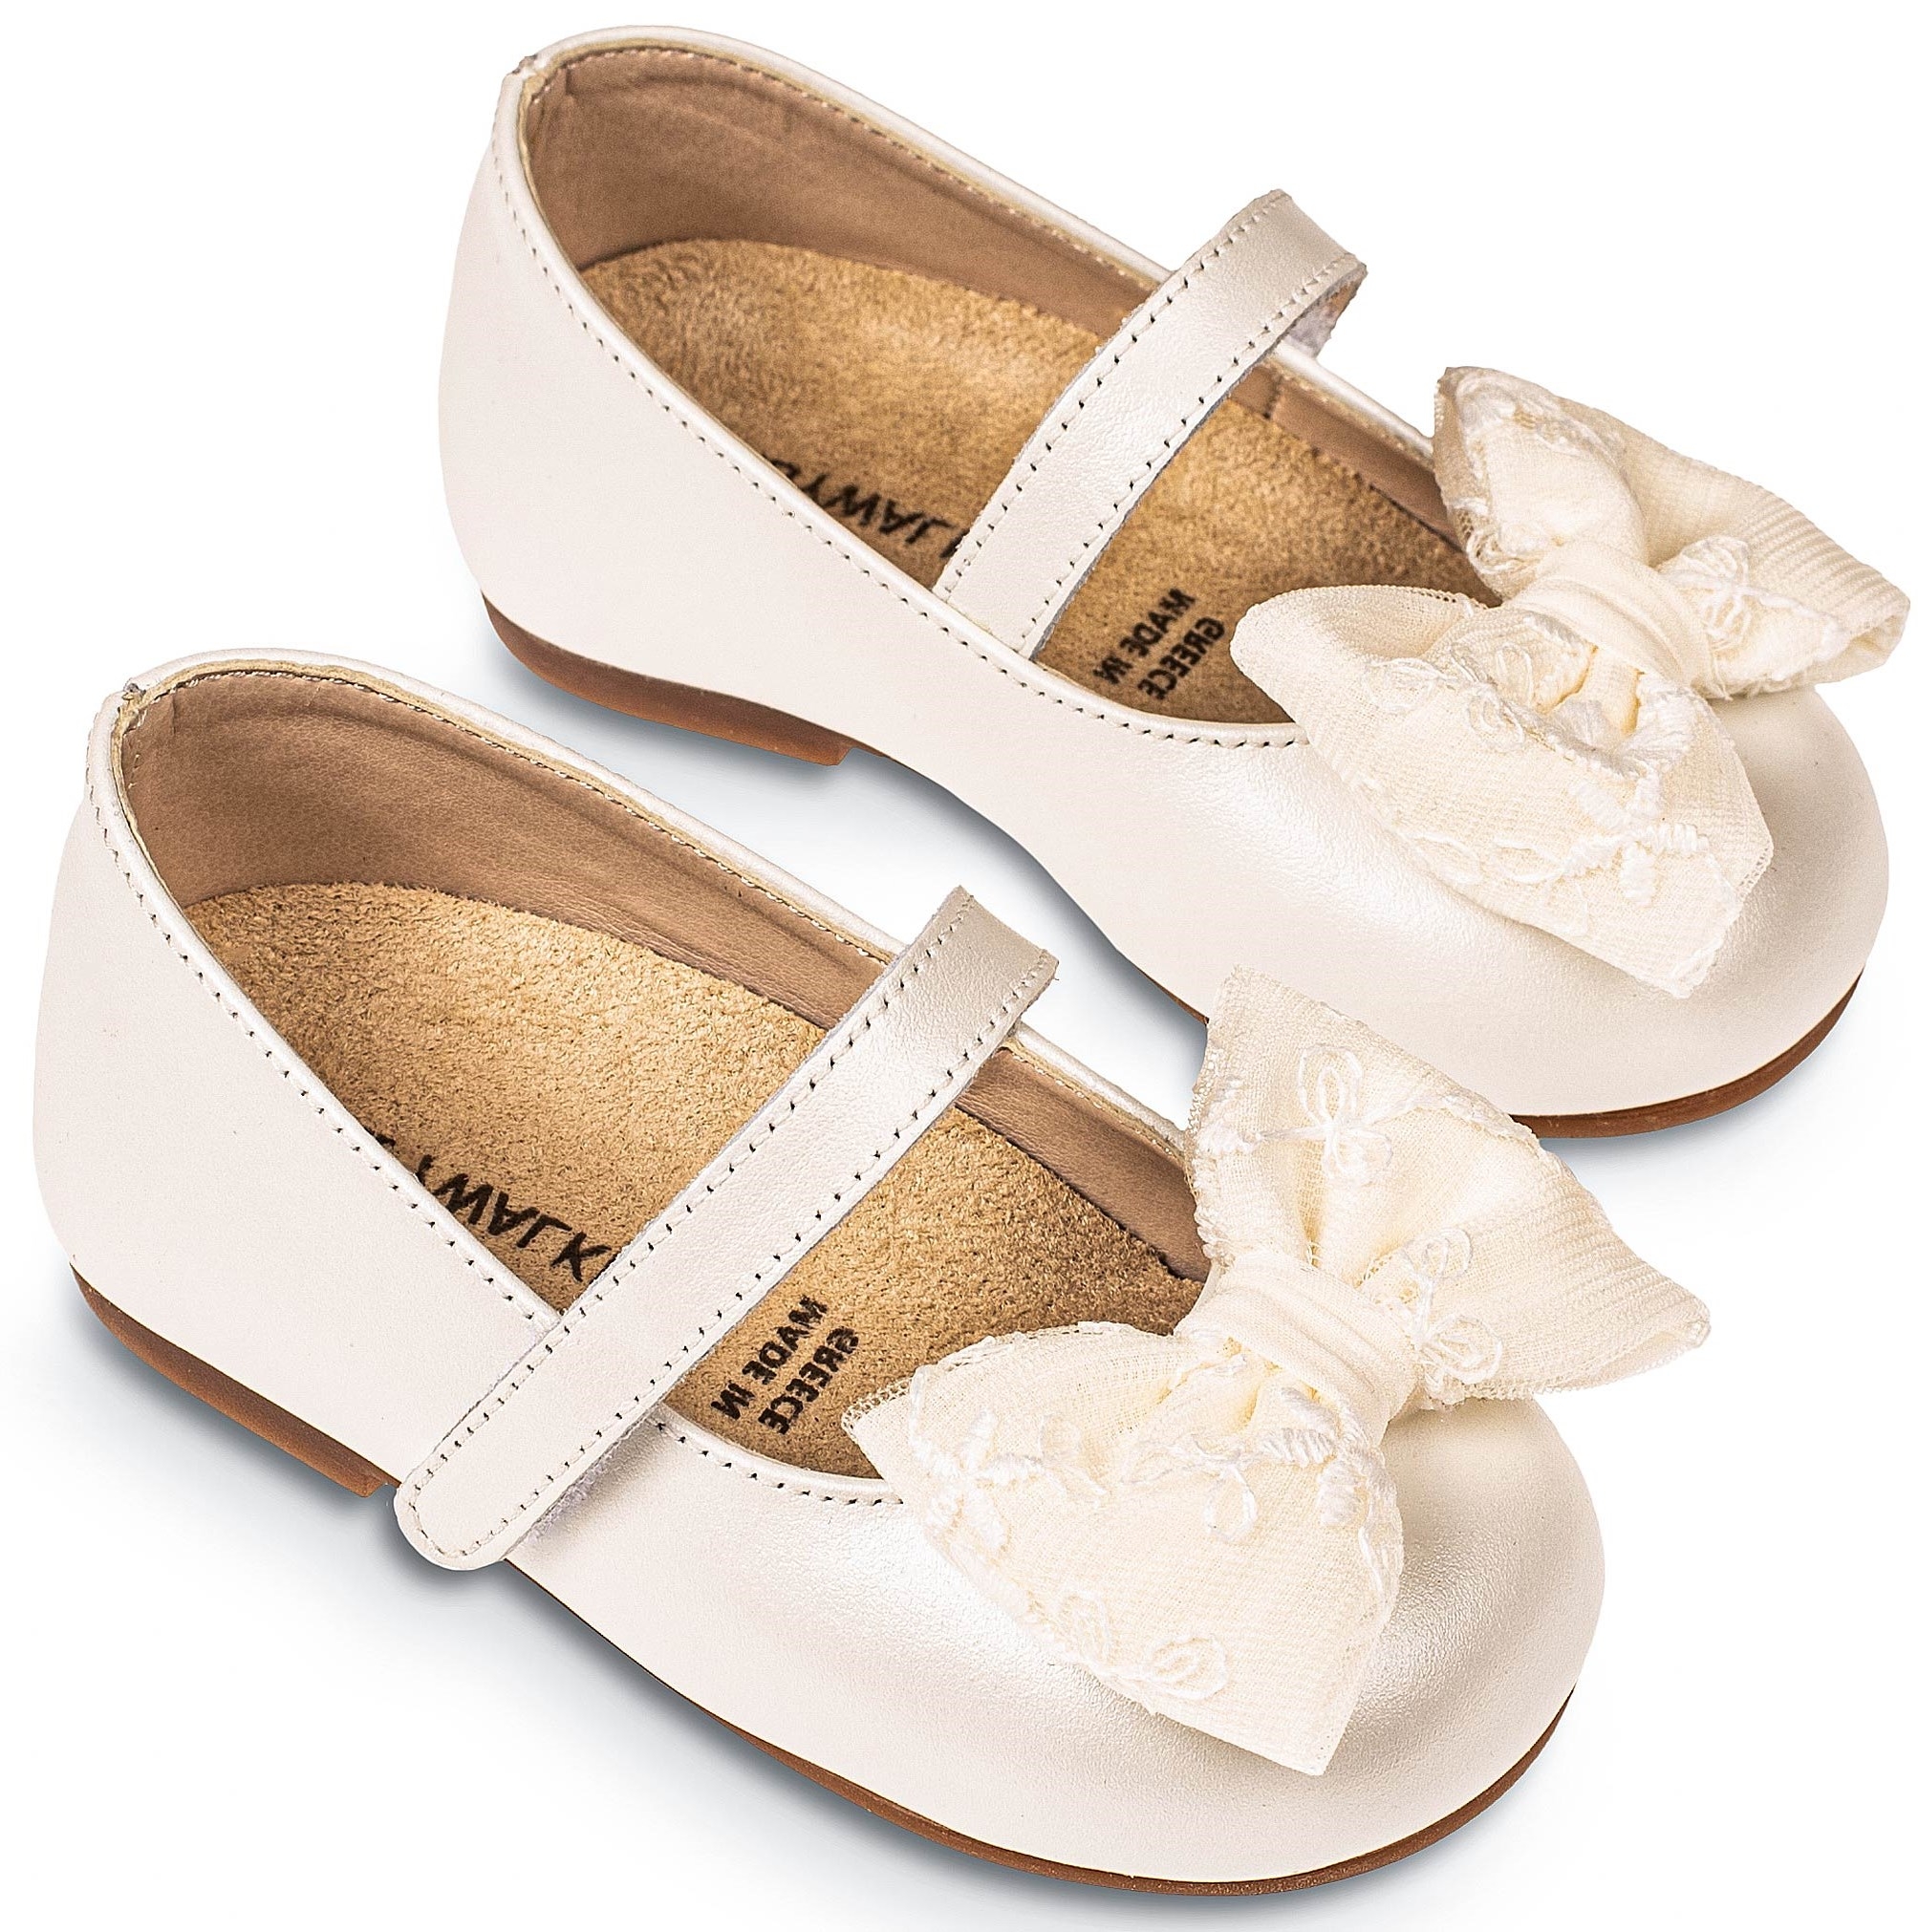 Γοβάκι με φιογκάκι εκρού - Βαπτιστικά παπούτσια για κορίτσι